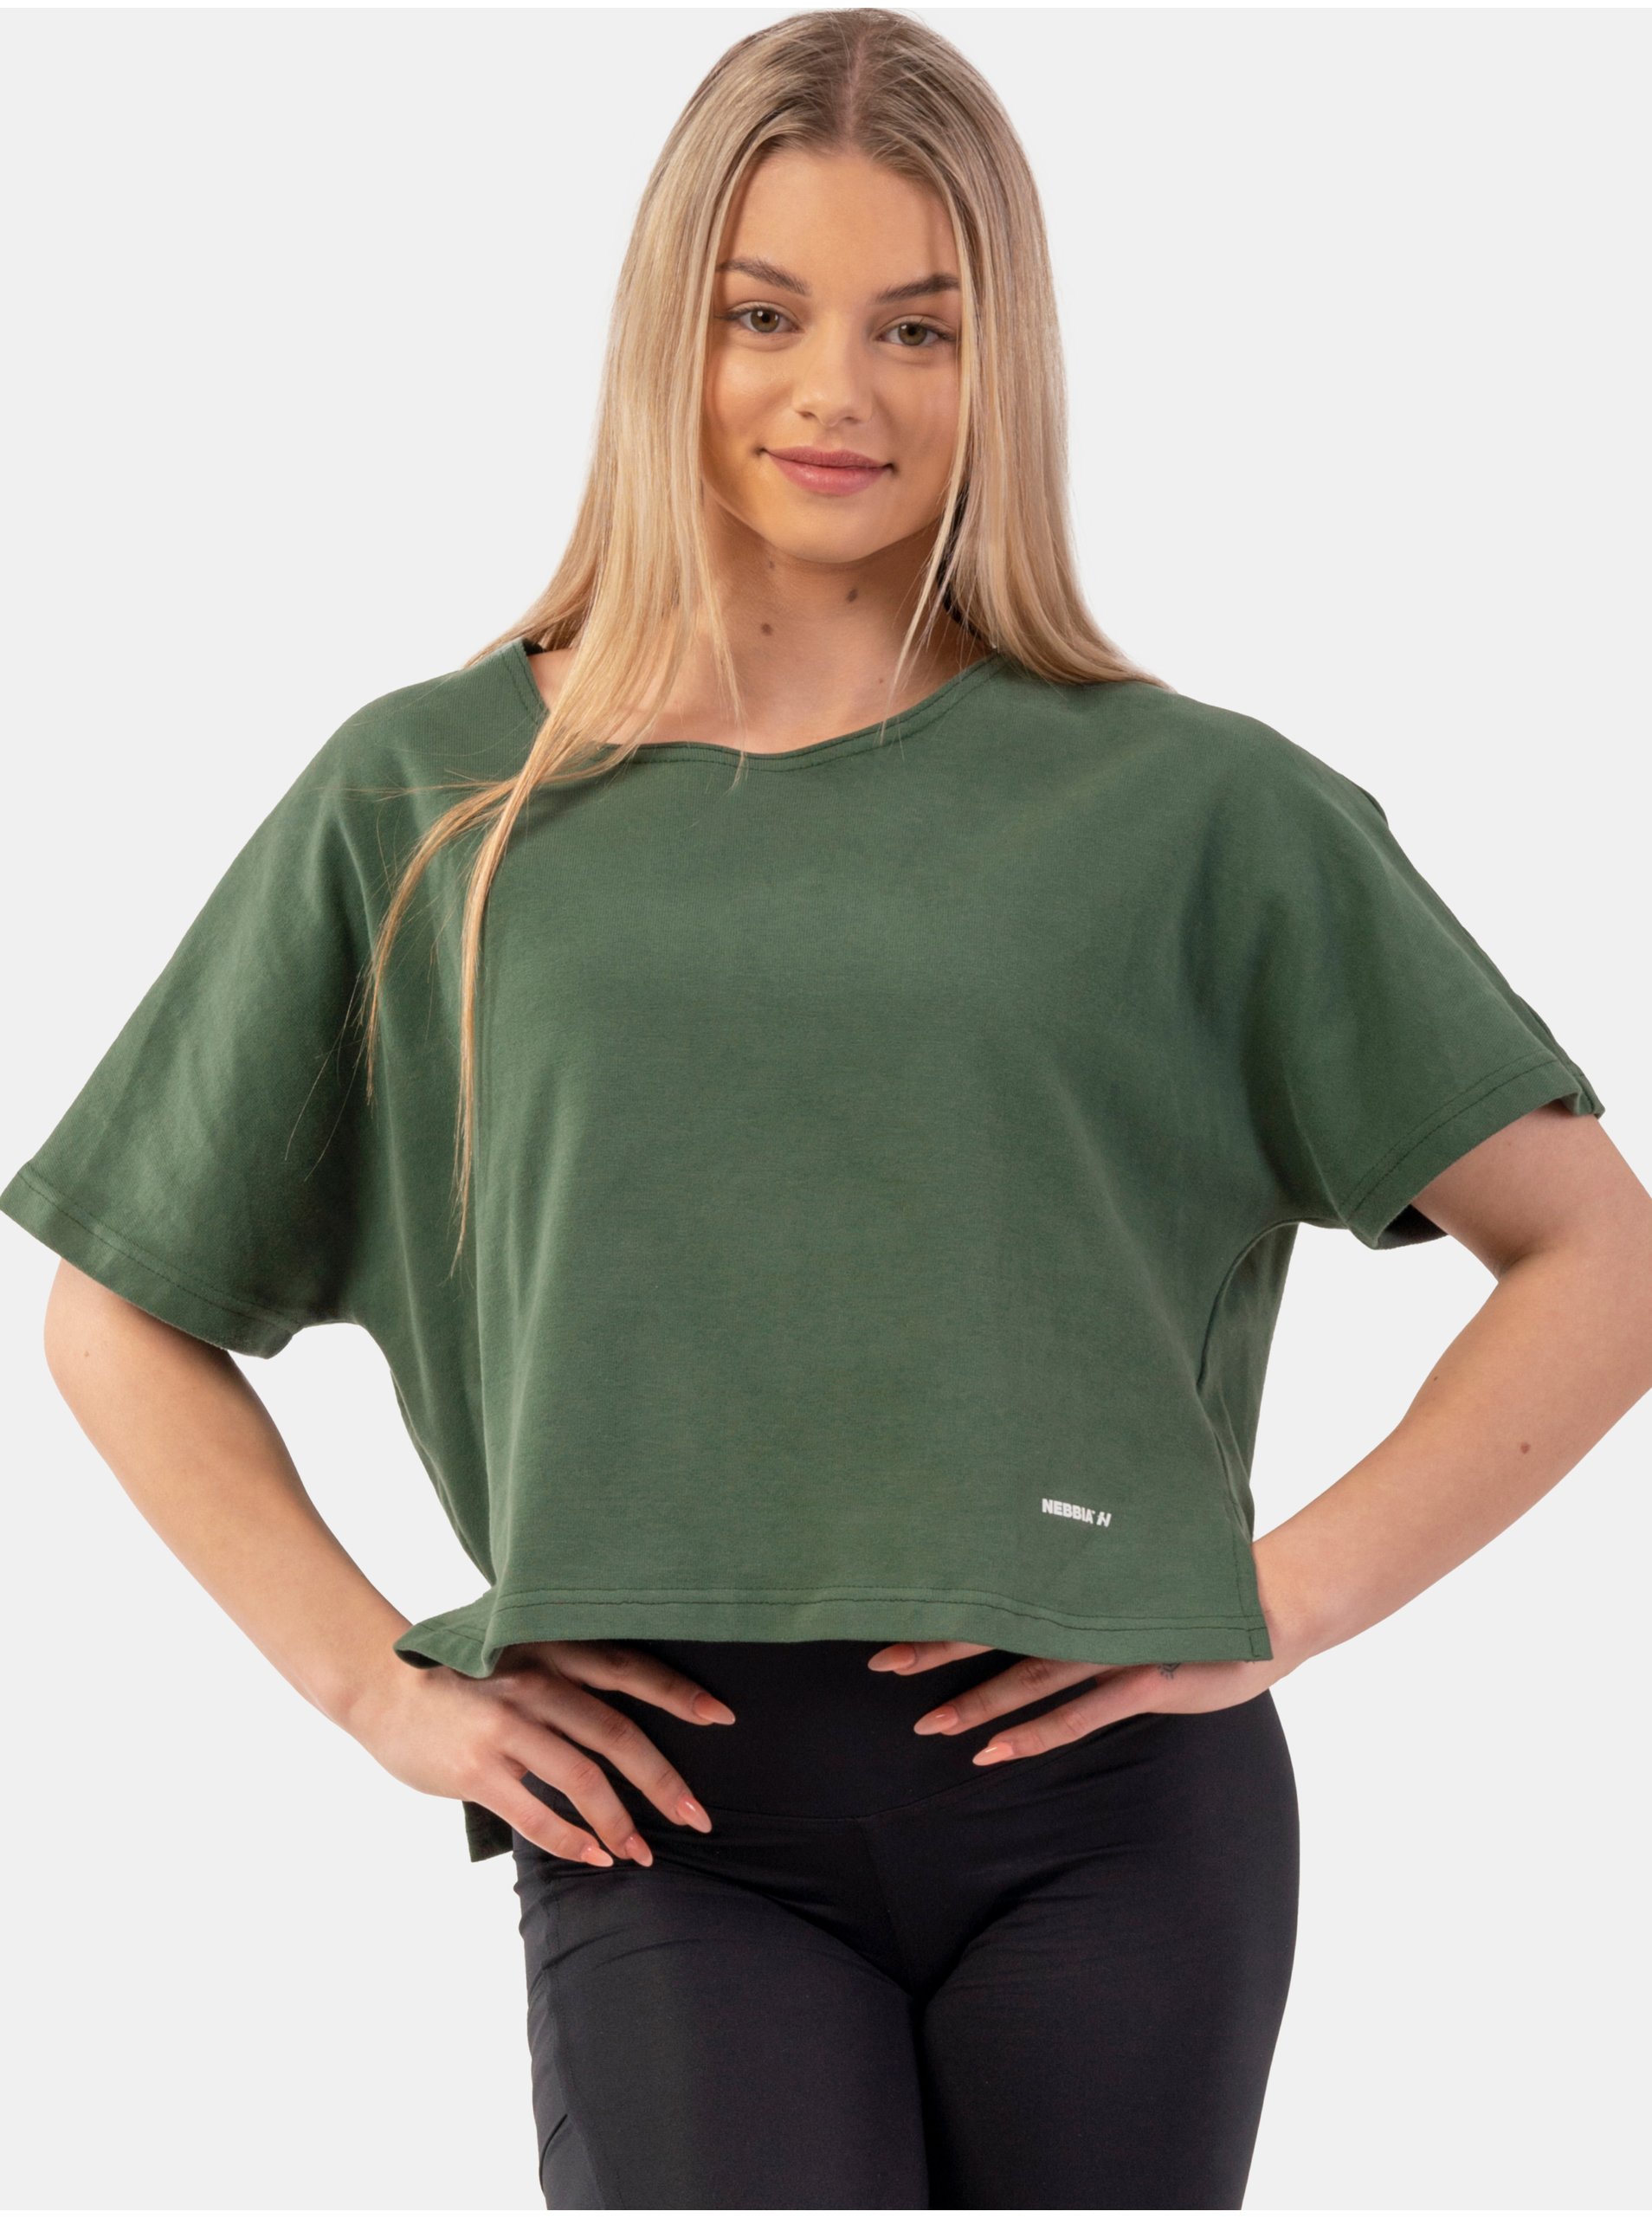 Lacno Zelené dámske športové tričko NEBBIA The Minimalist